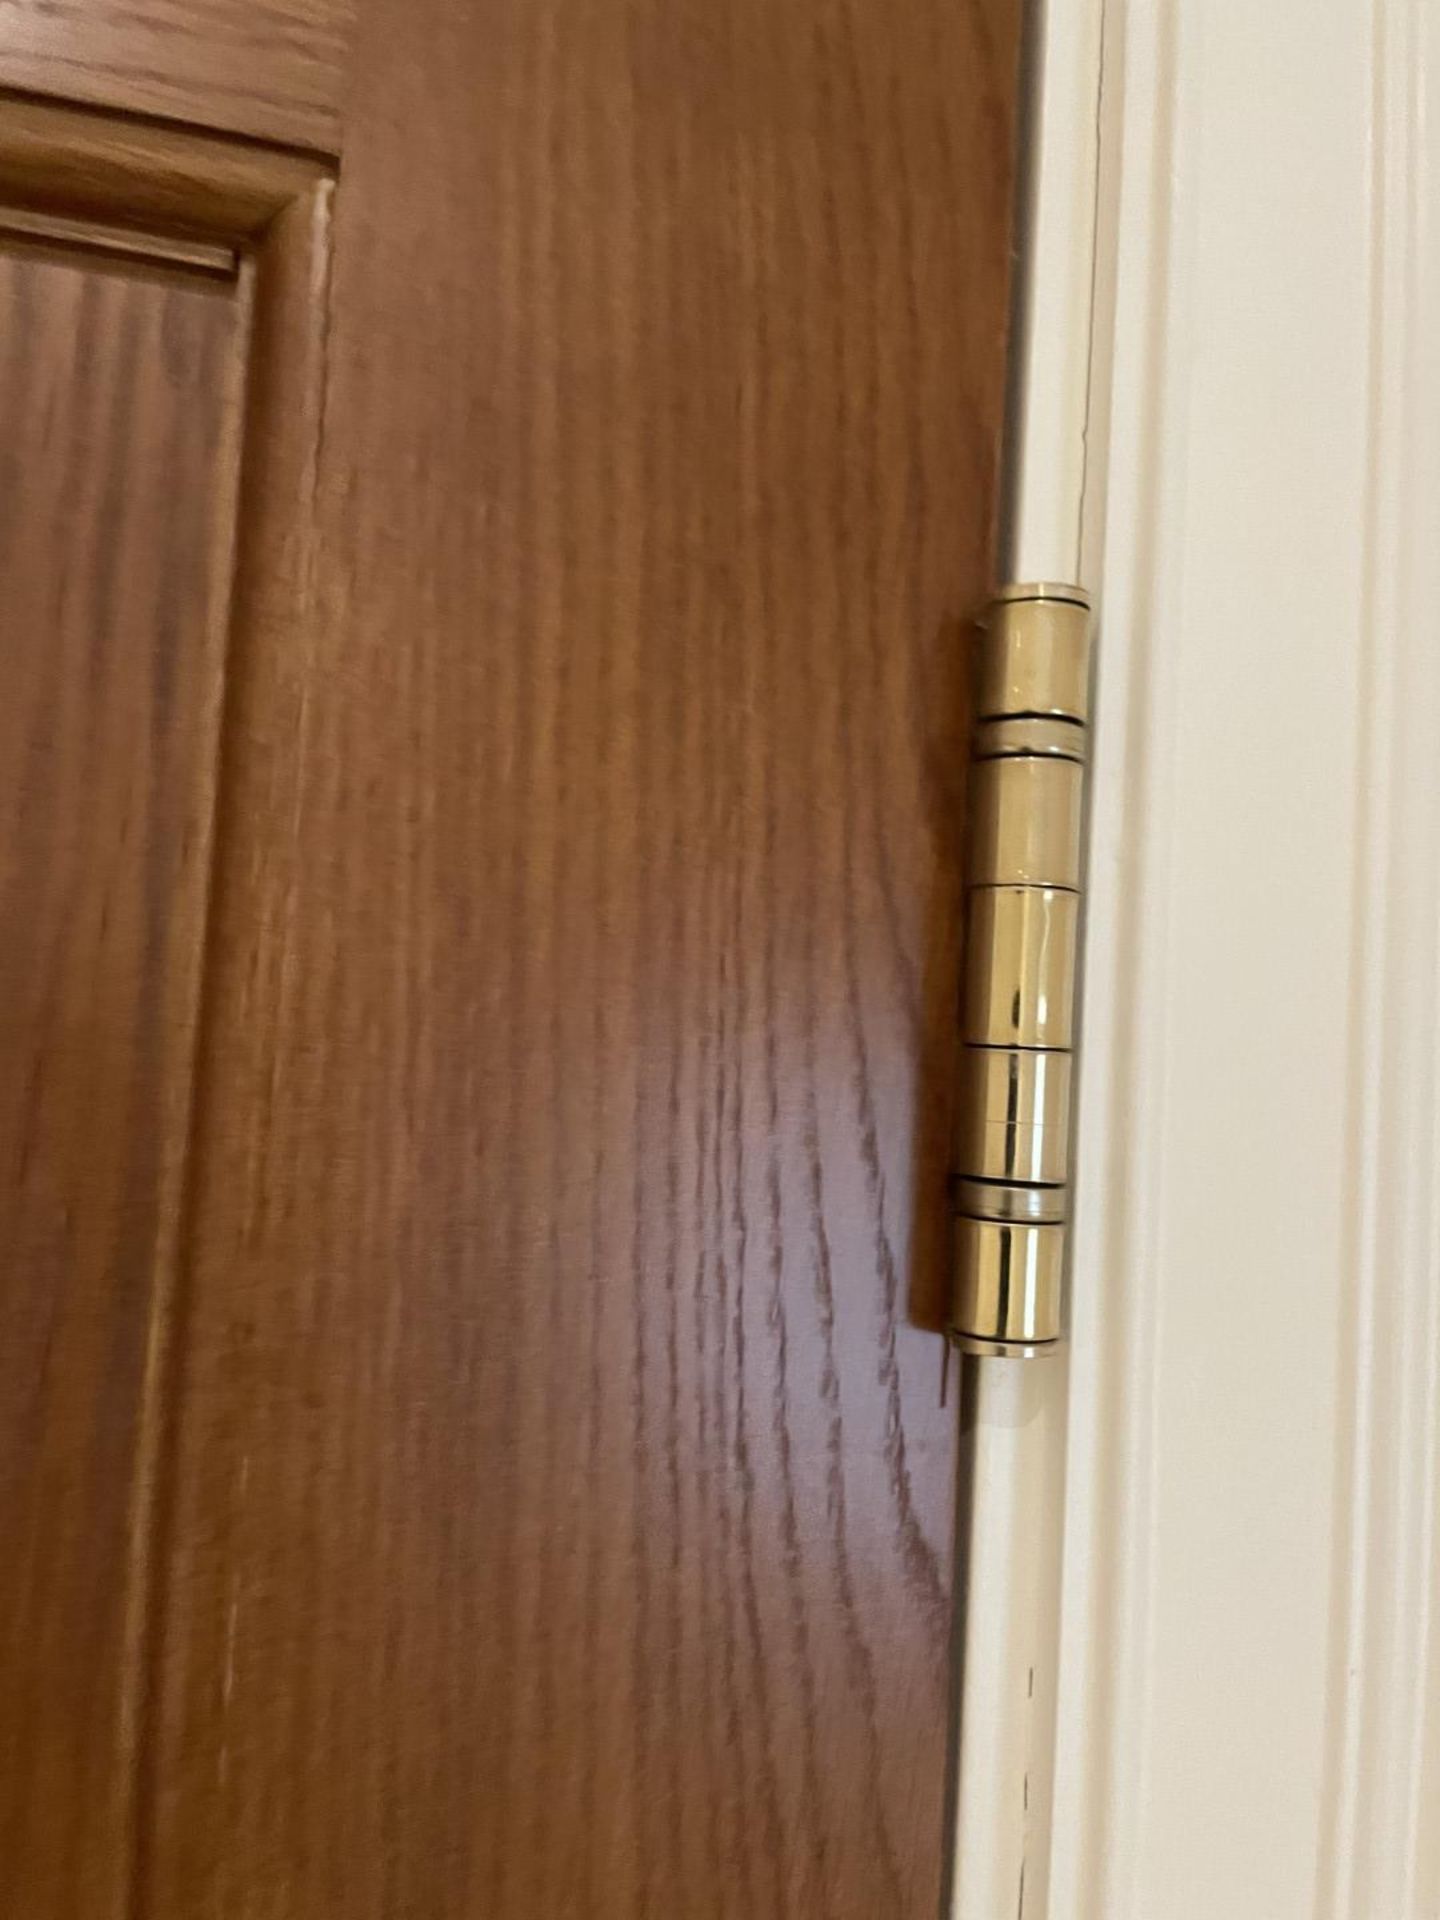 1 x Solid Oak Wooden Lockable Internal Door - Includes Handles and Hinges - Ref: PAN286 / - Image 16 of 17